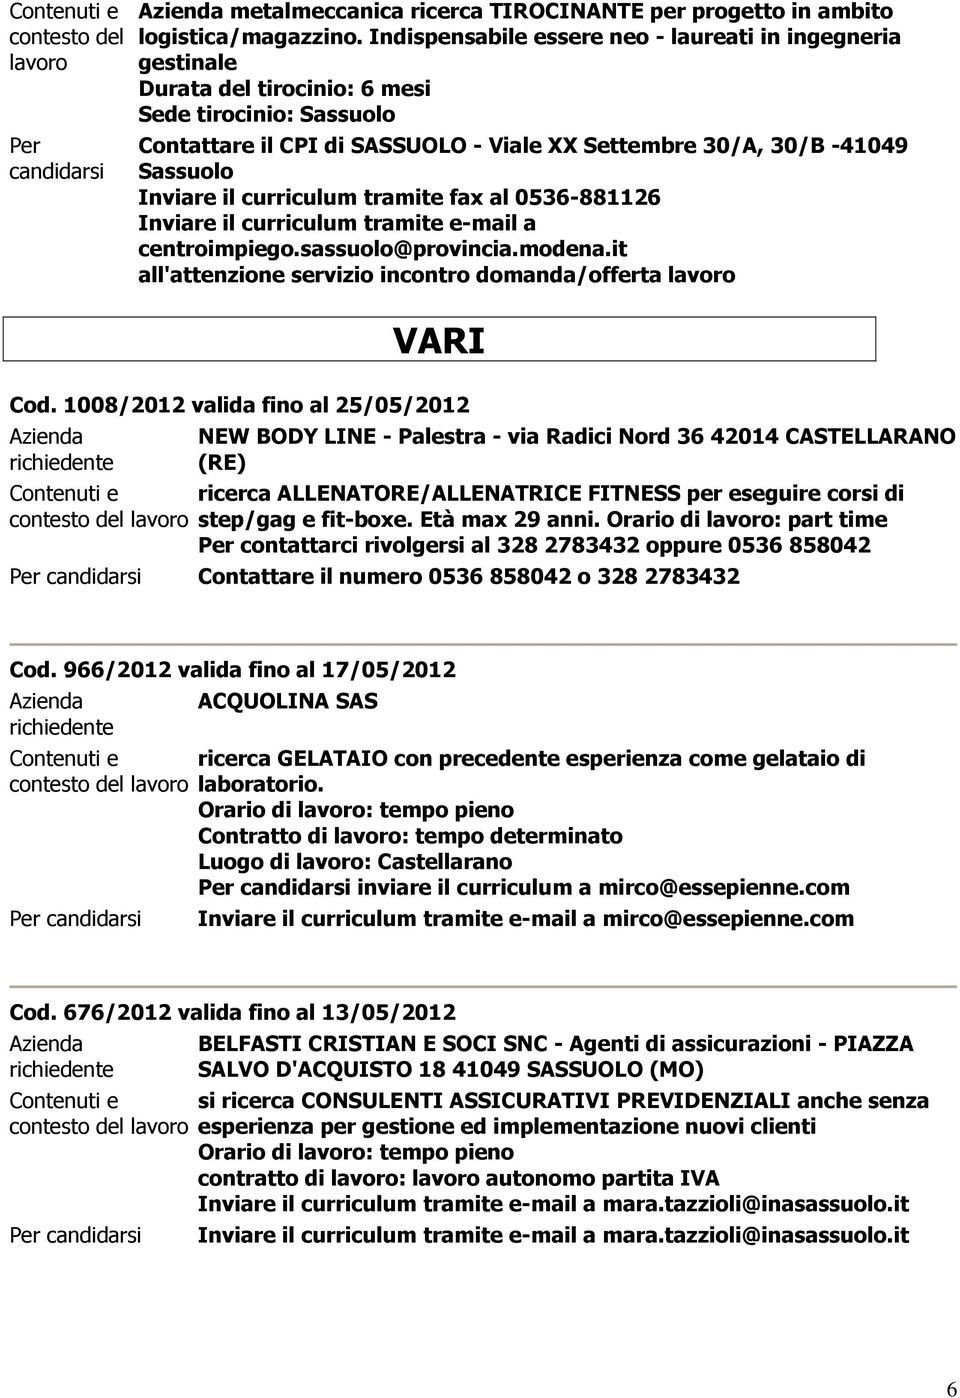 1008/2012 valida fino al 25/05/2012 NEW BODY LINE - Palestra - via Radici Nord 36 42014 CASTELLARANO (RE) ricerca ALLENATORE/ALLENATRICE FITNESS per eseguire corsi di step/gag e fit-boxe.